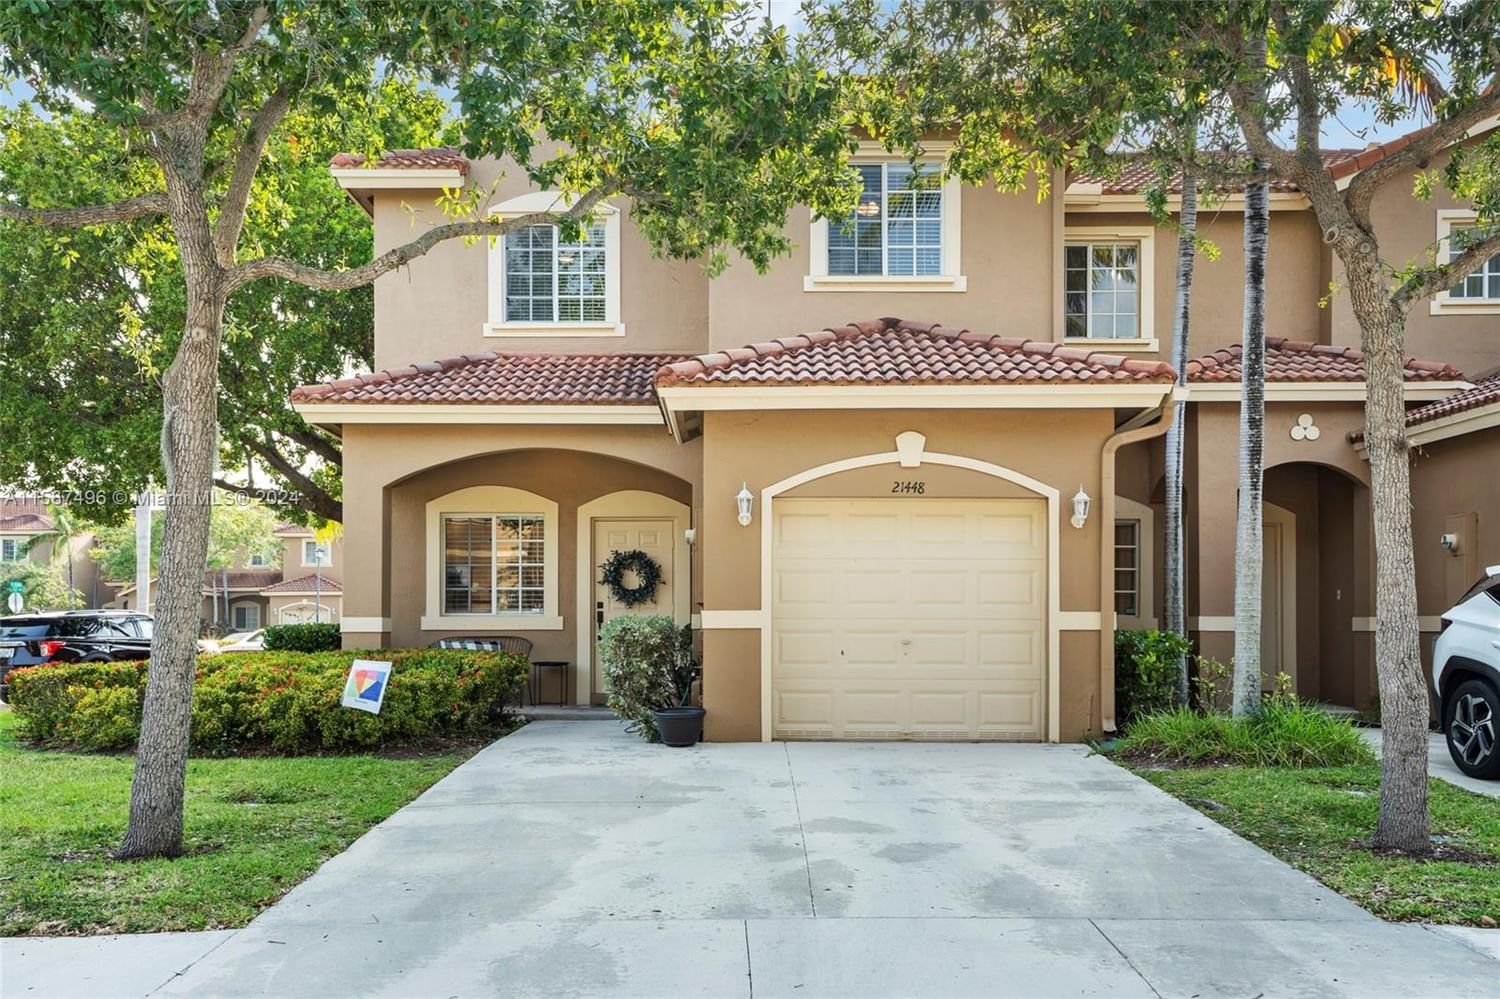 Real estate property located at 21448 85th Path, Miami-Dade County, SANTA BARBARA, Cutler Bay, FL